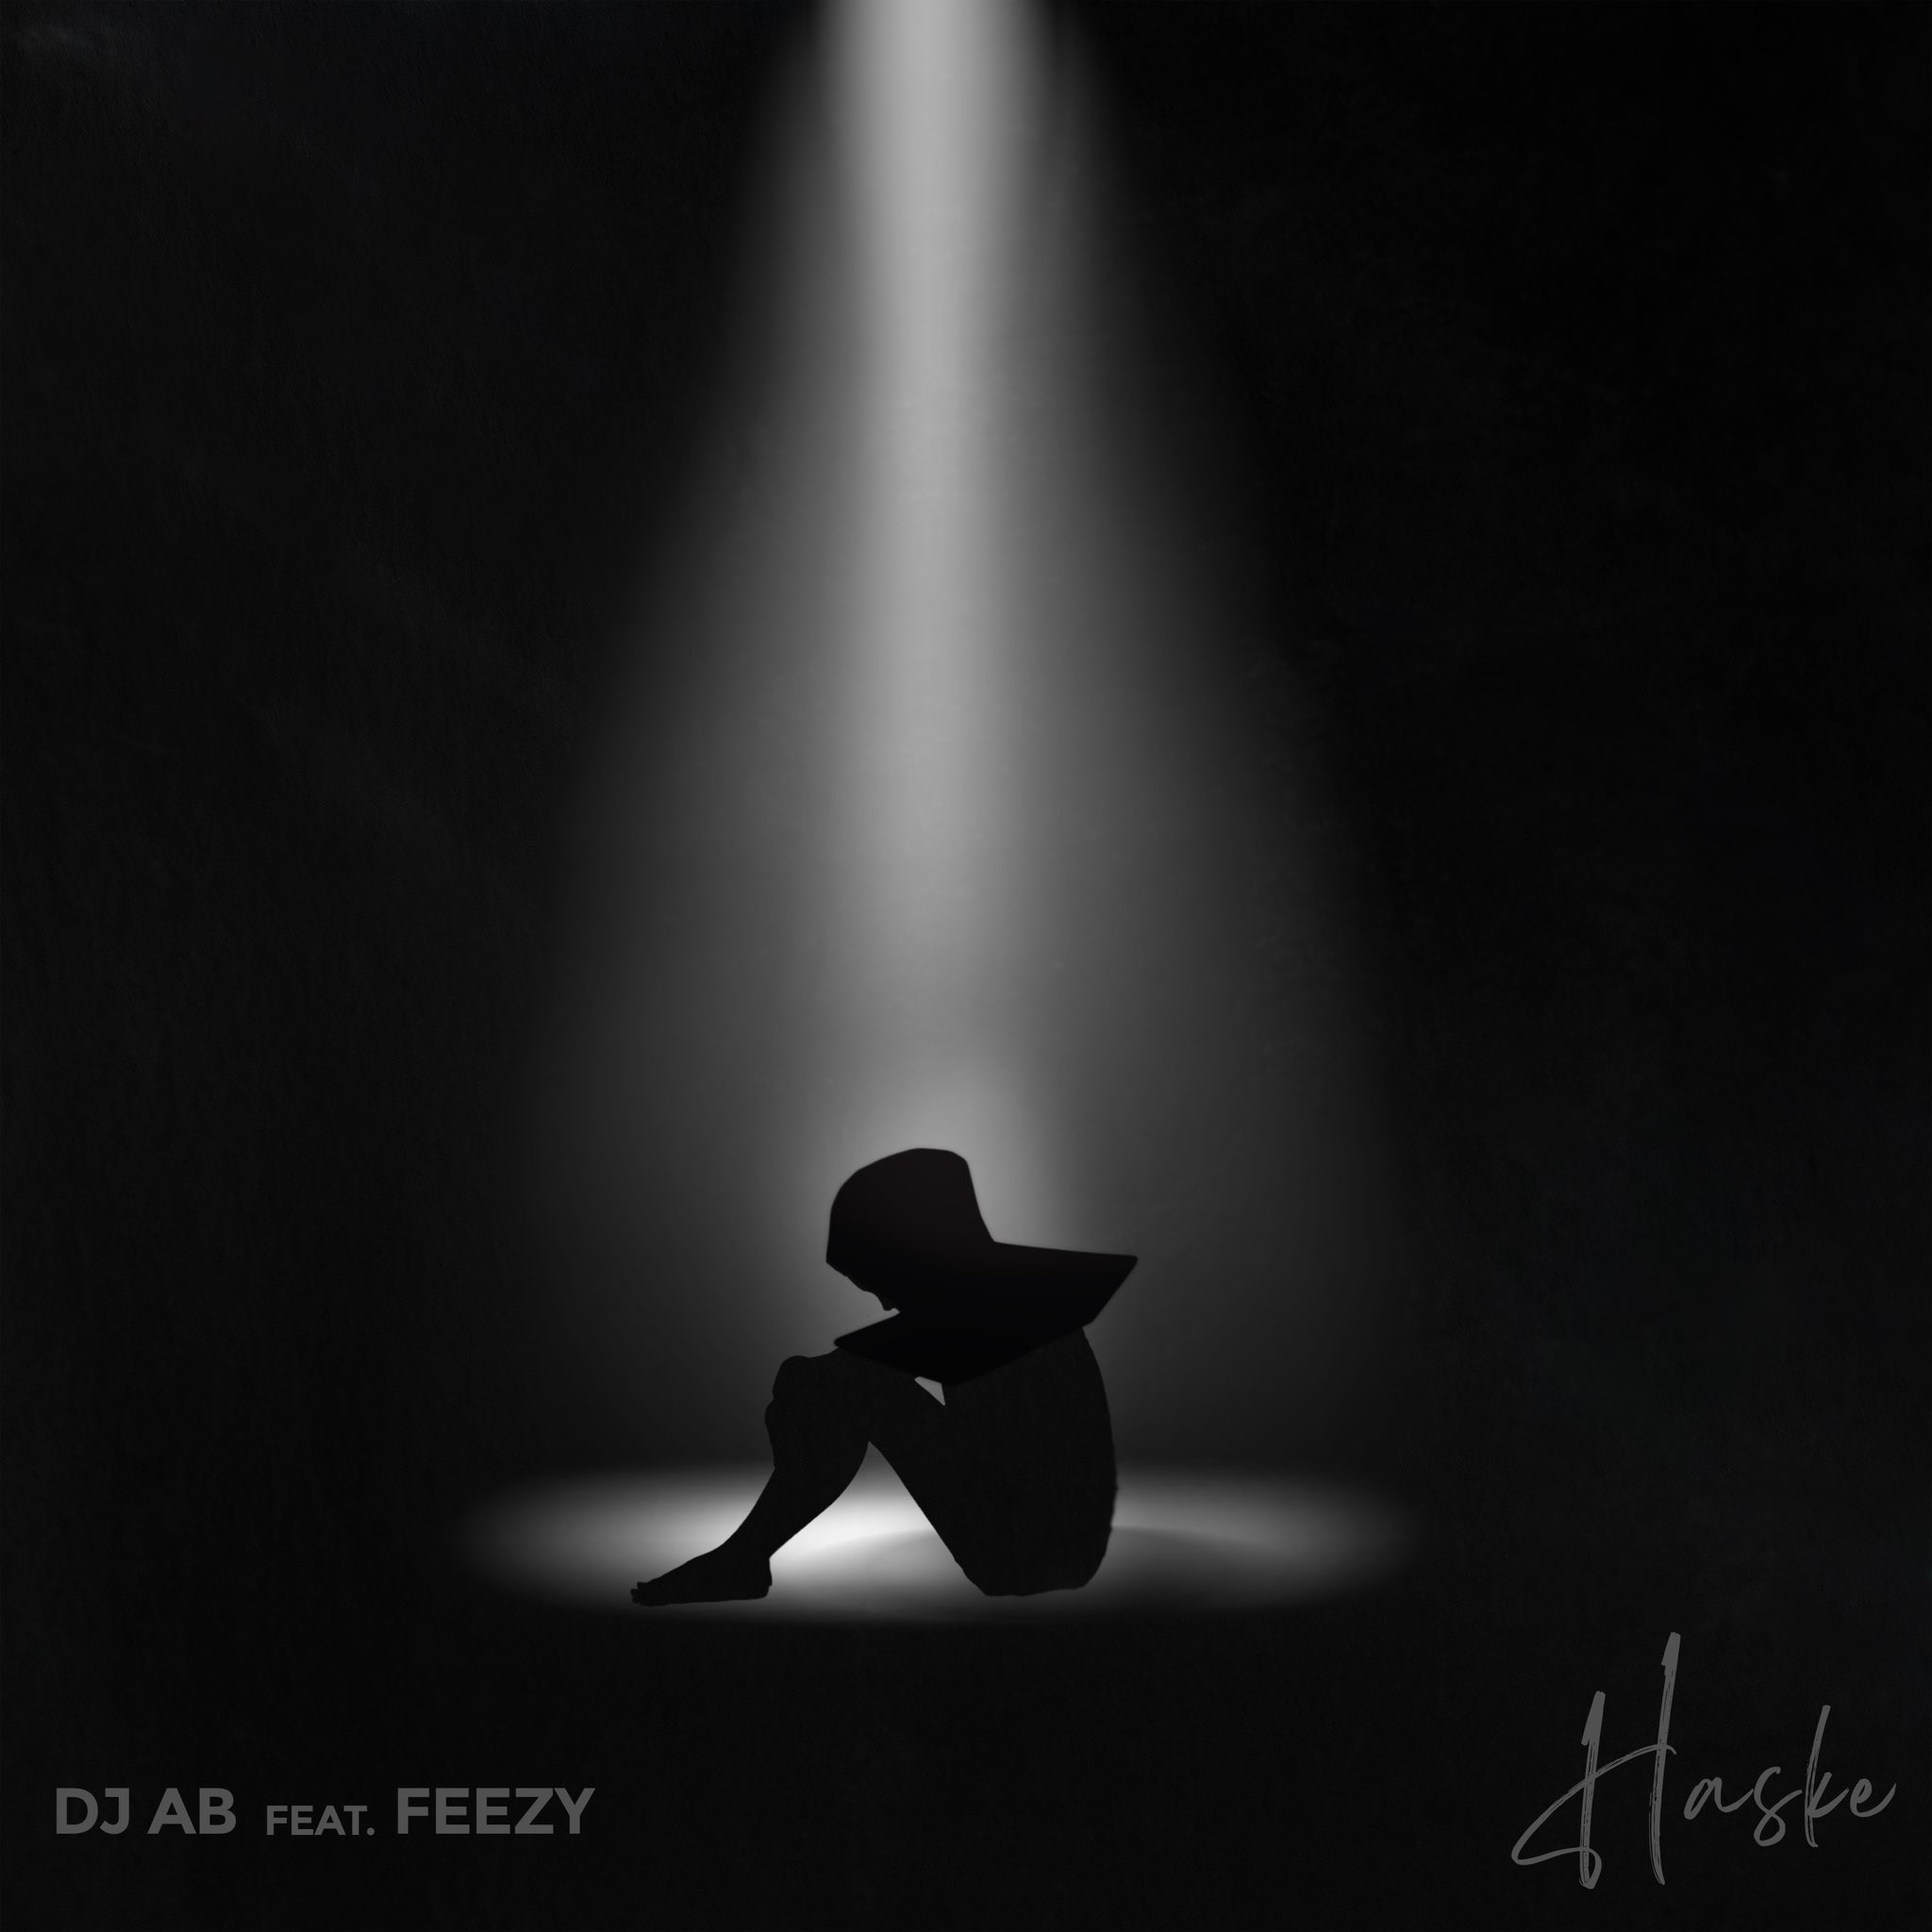 DJ AB Ft. Feezy - Haske Mp3 Download